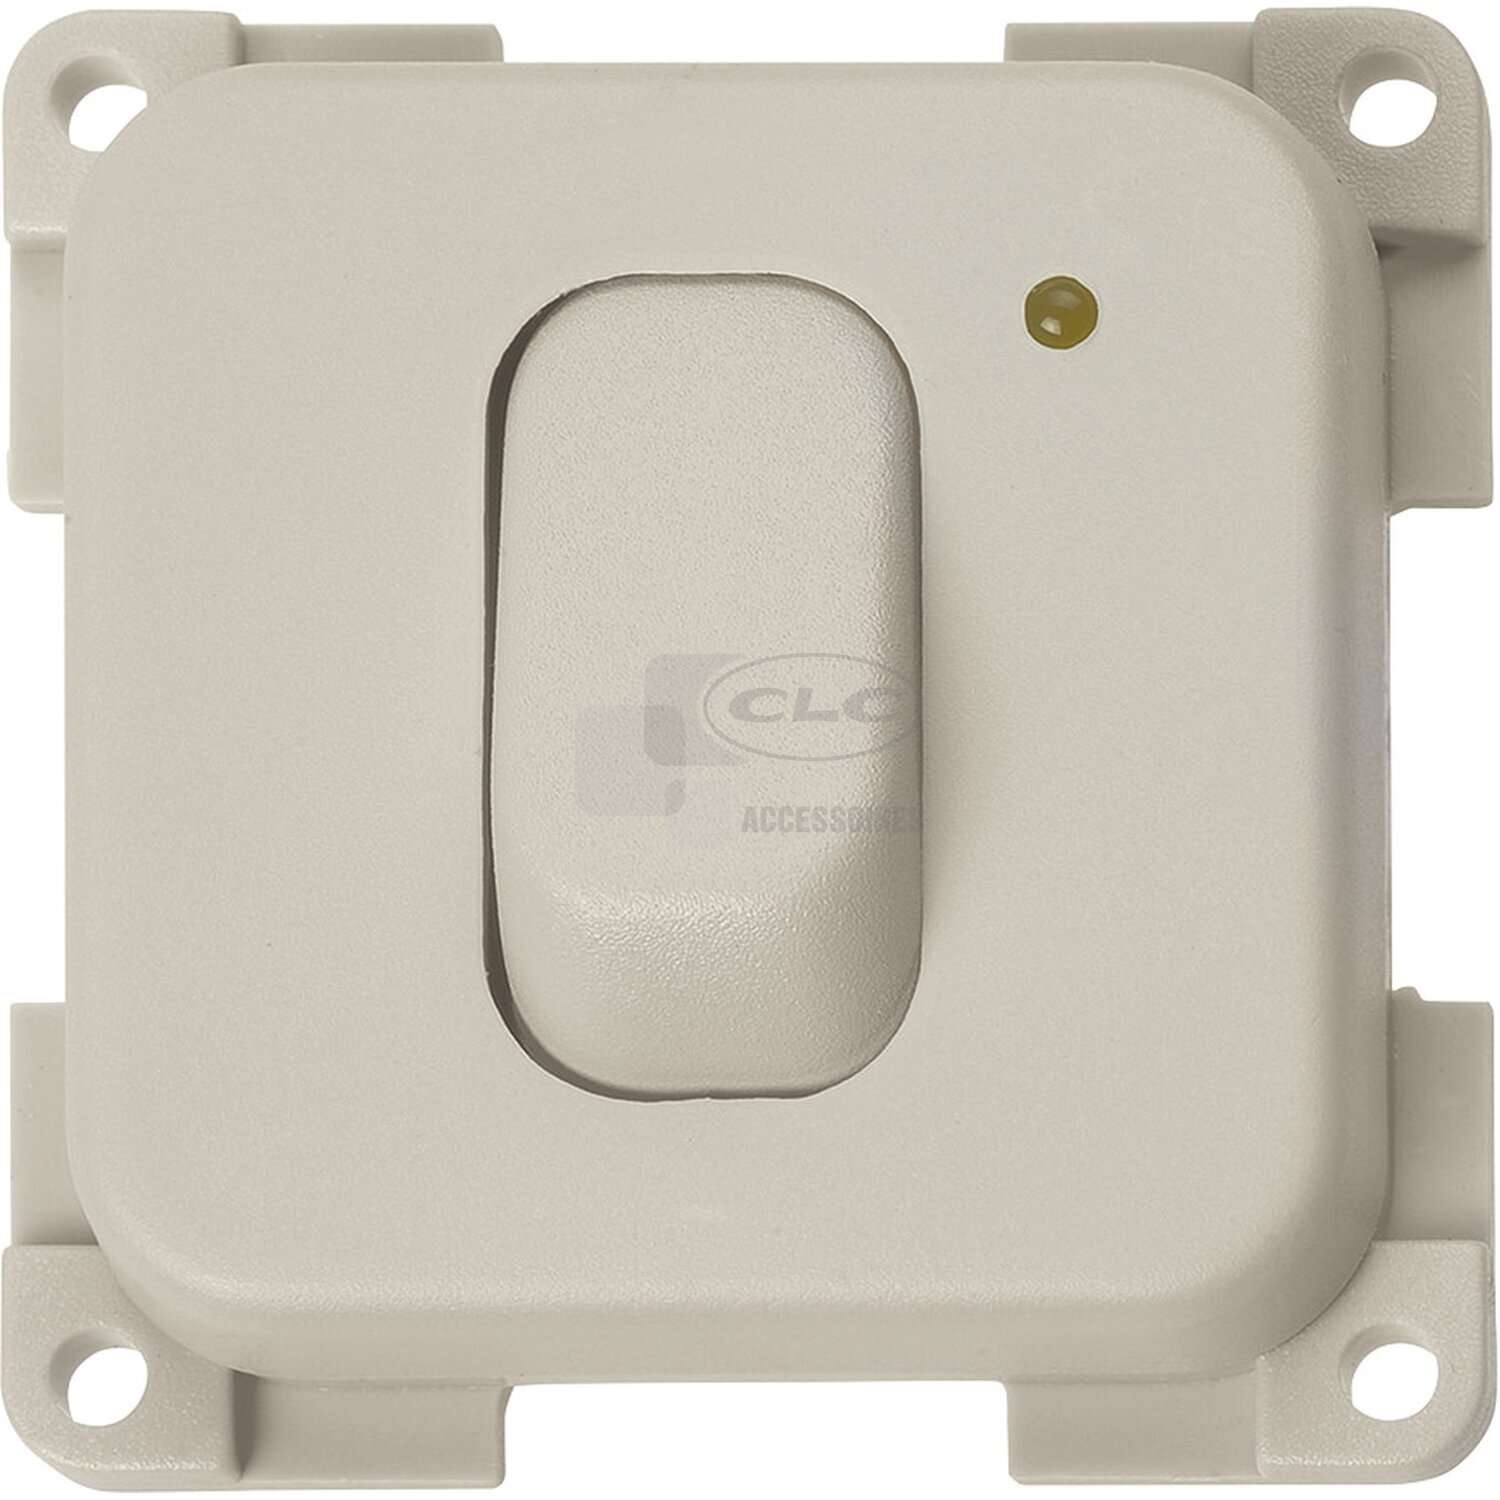 CLC Accessoires - Interrupteur à bascule 12V + voyant gris clair 430693 -  Groupe CLC Loisirs